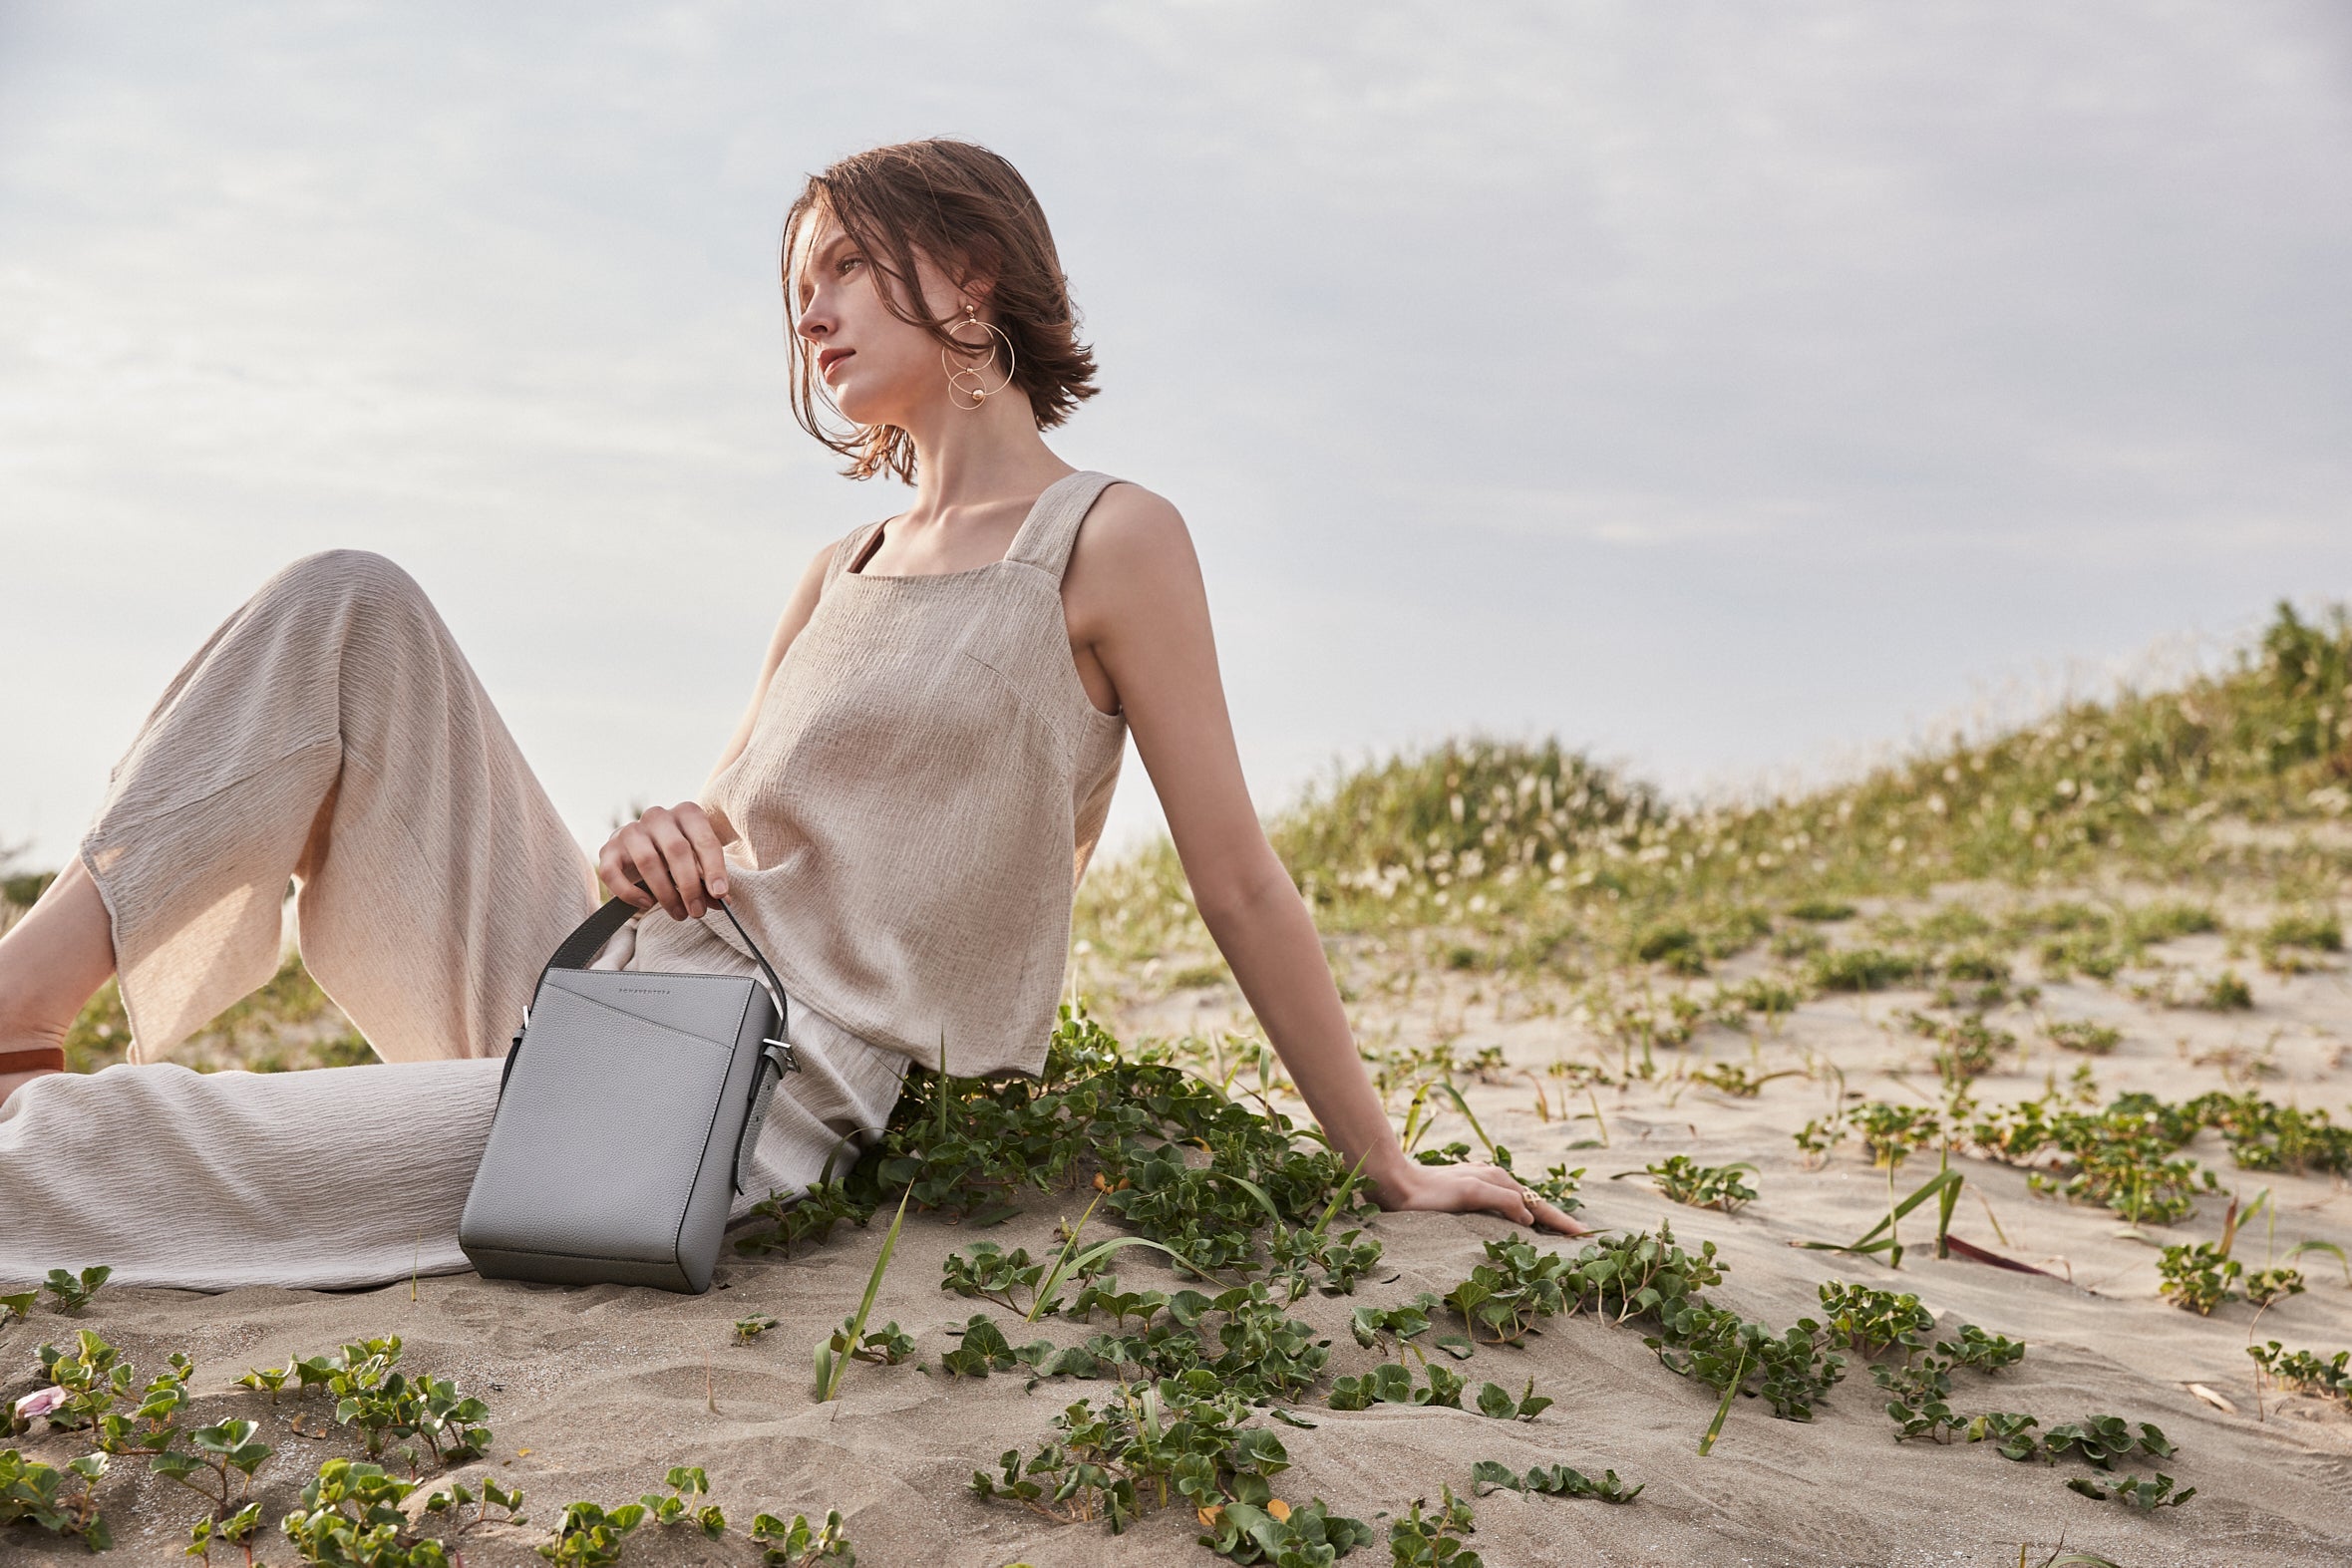 Stylová žena má během výletu na pláž na sobě udržitelnou kabelku BONAVENTURA vyrobenou z celokožené kůže.